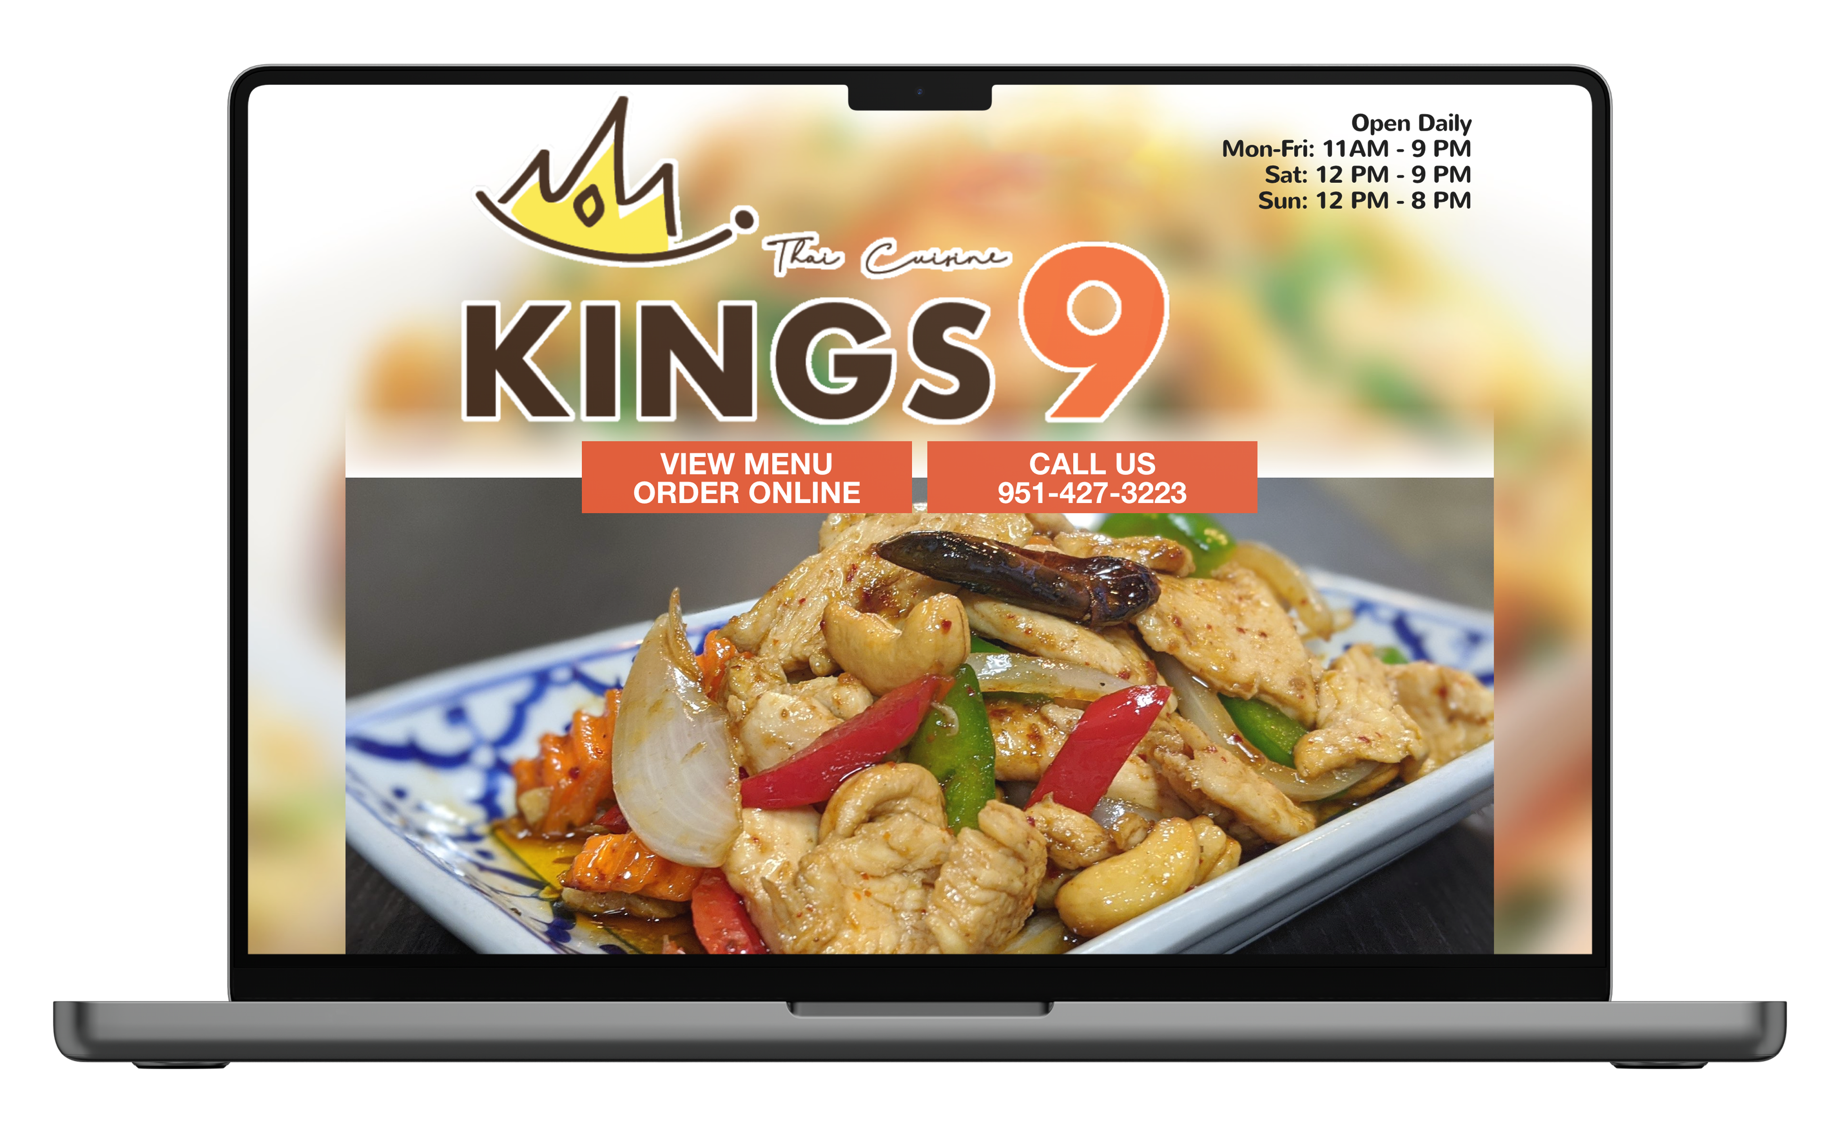 Macbook with restaurant website